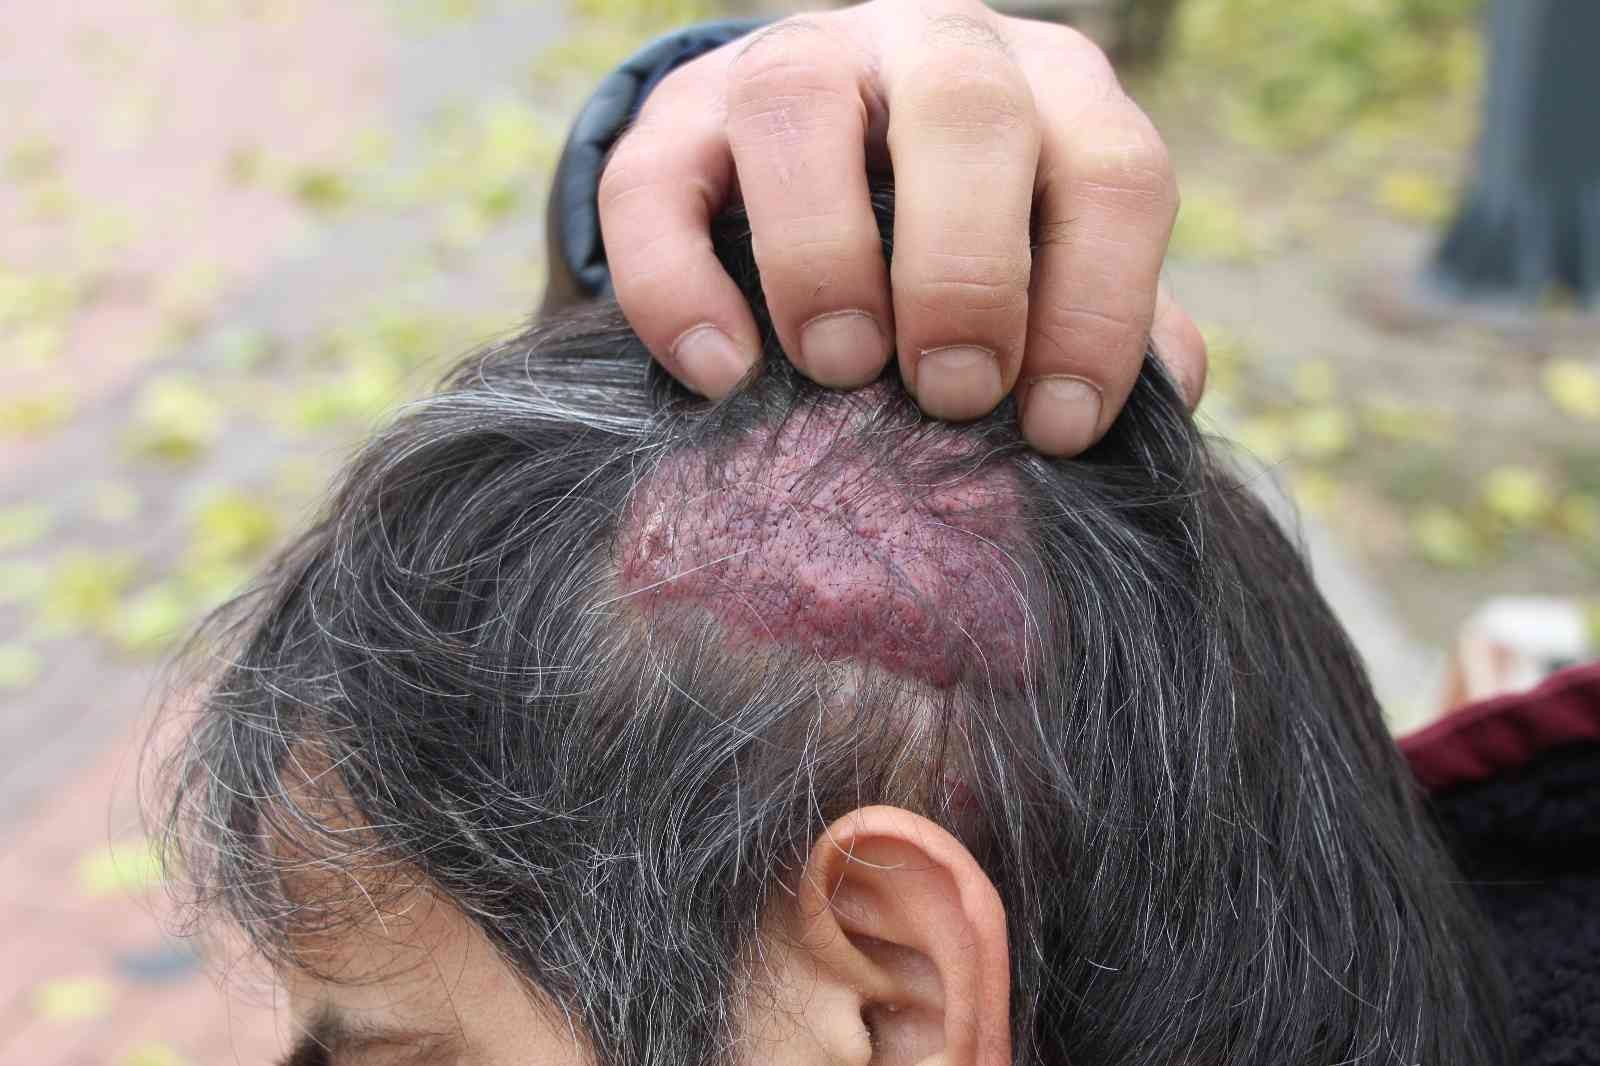 Başında oluşan kistten muzdarip olan hastaya 12 yıldır teşhis konulamadı #batman